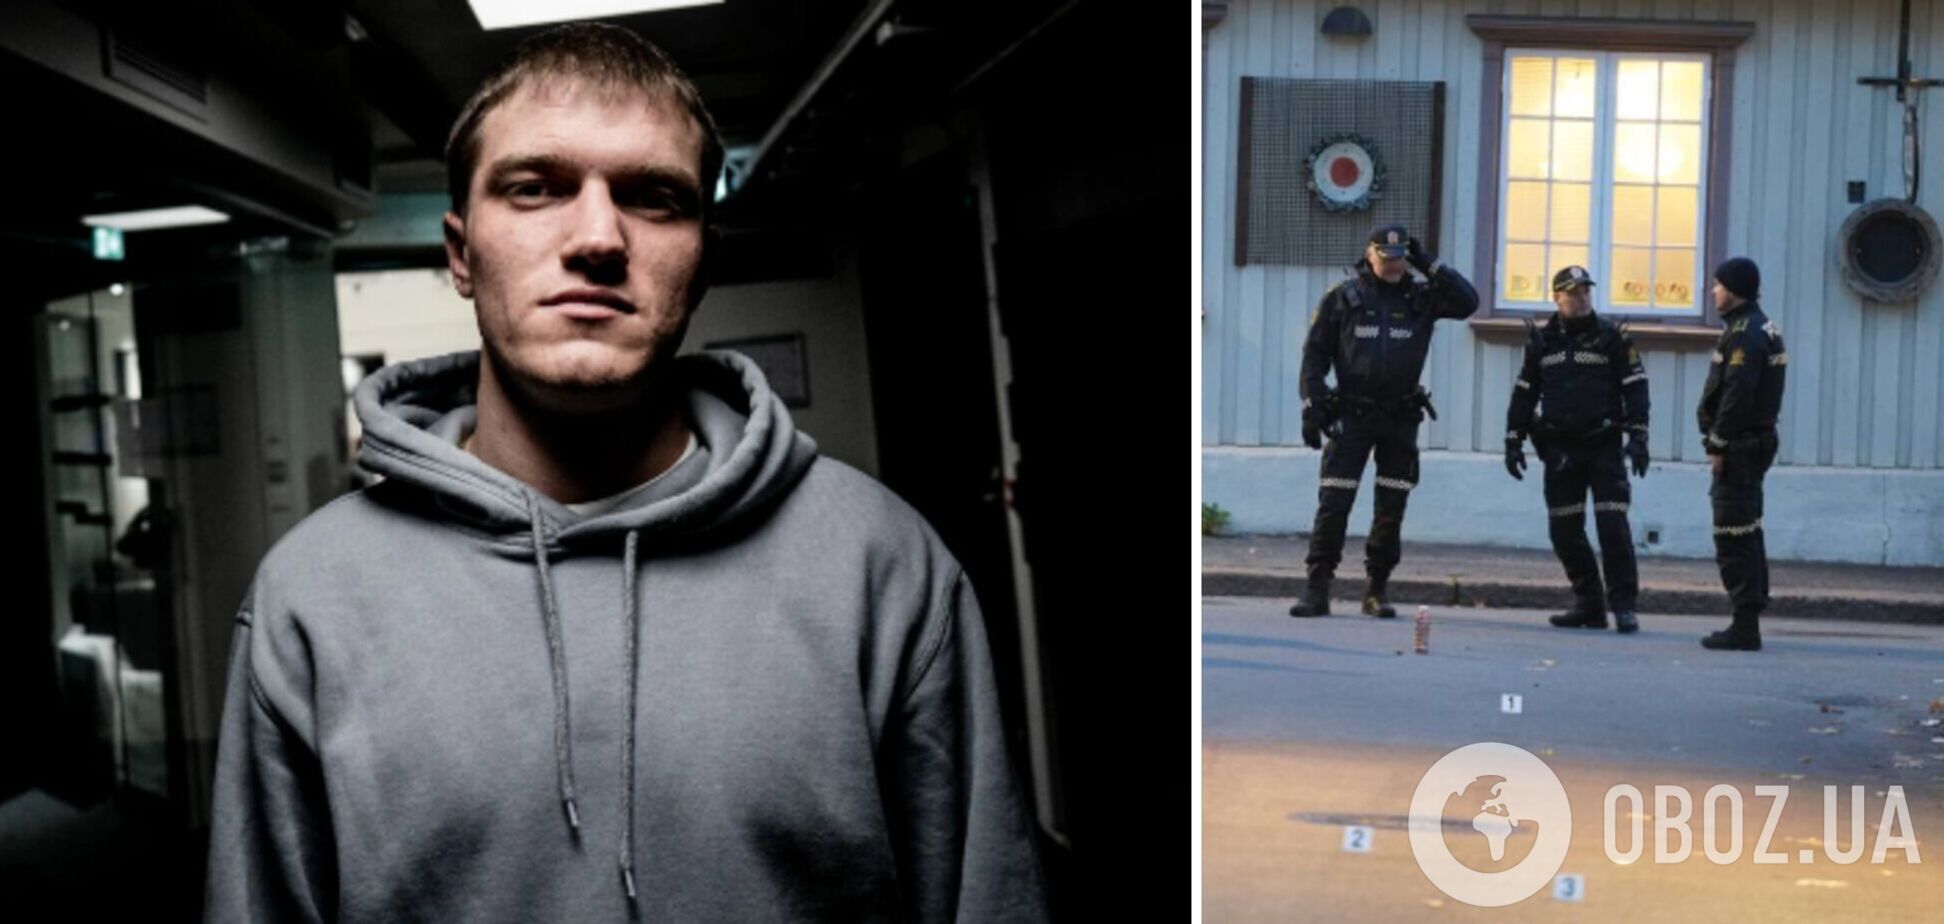 Экс-командира ЧВК 'Вагнер', который просил убежища в Норвегии, задержали за драку у паба